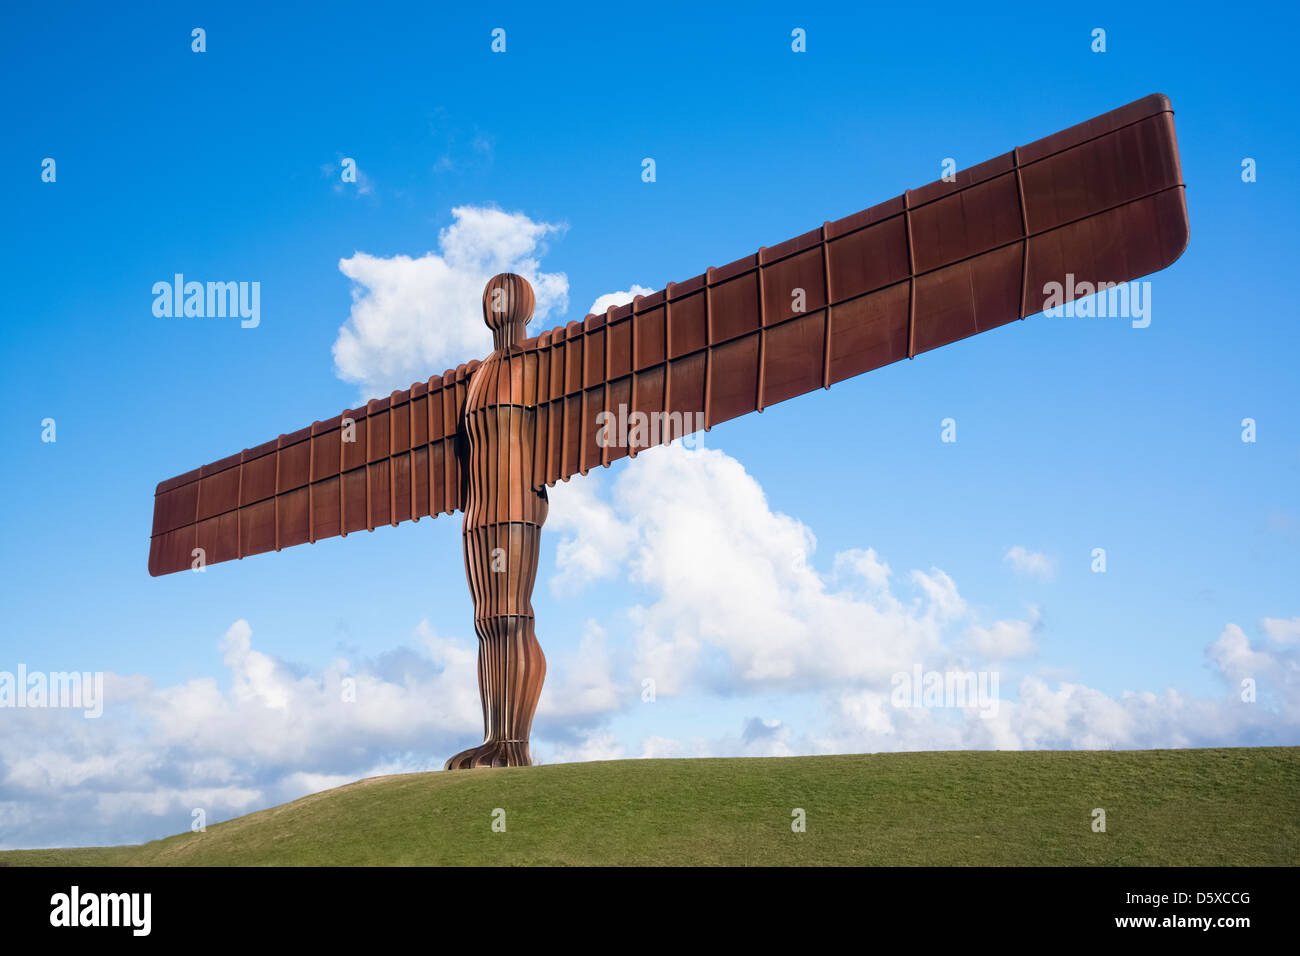 Engel des Nordens, zeitgenössische Skulptur, entworfen von Antony Gormley in Gateshead, England gelegen. Stockfoto